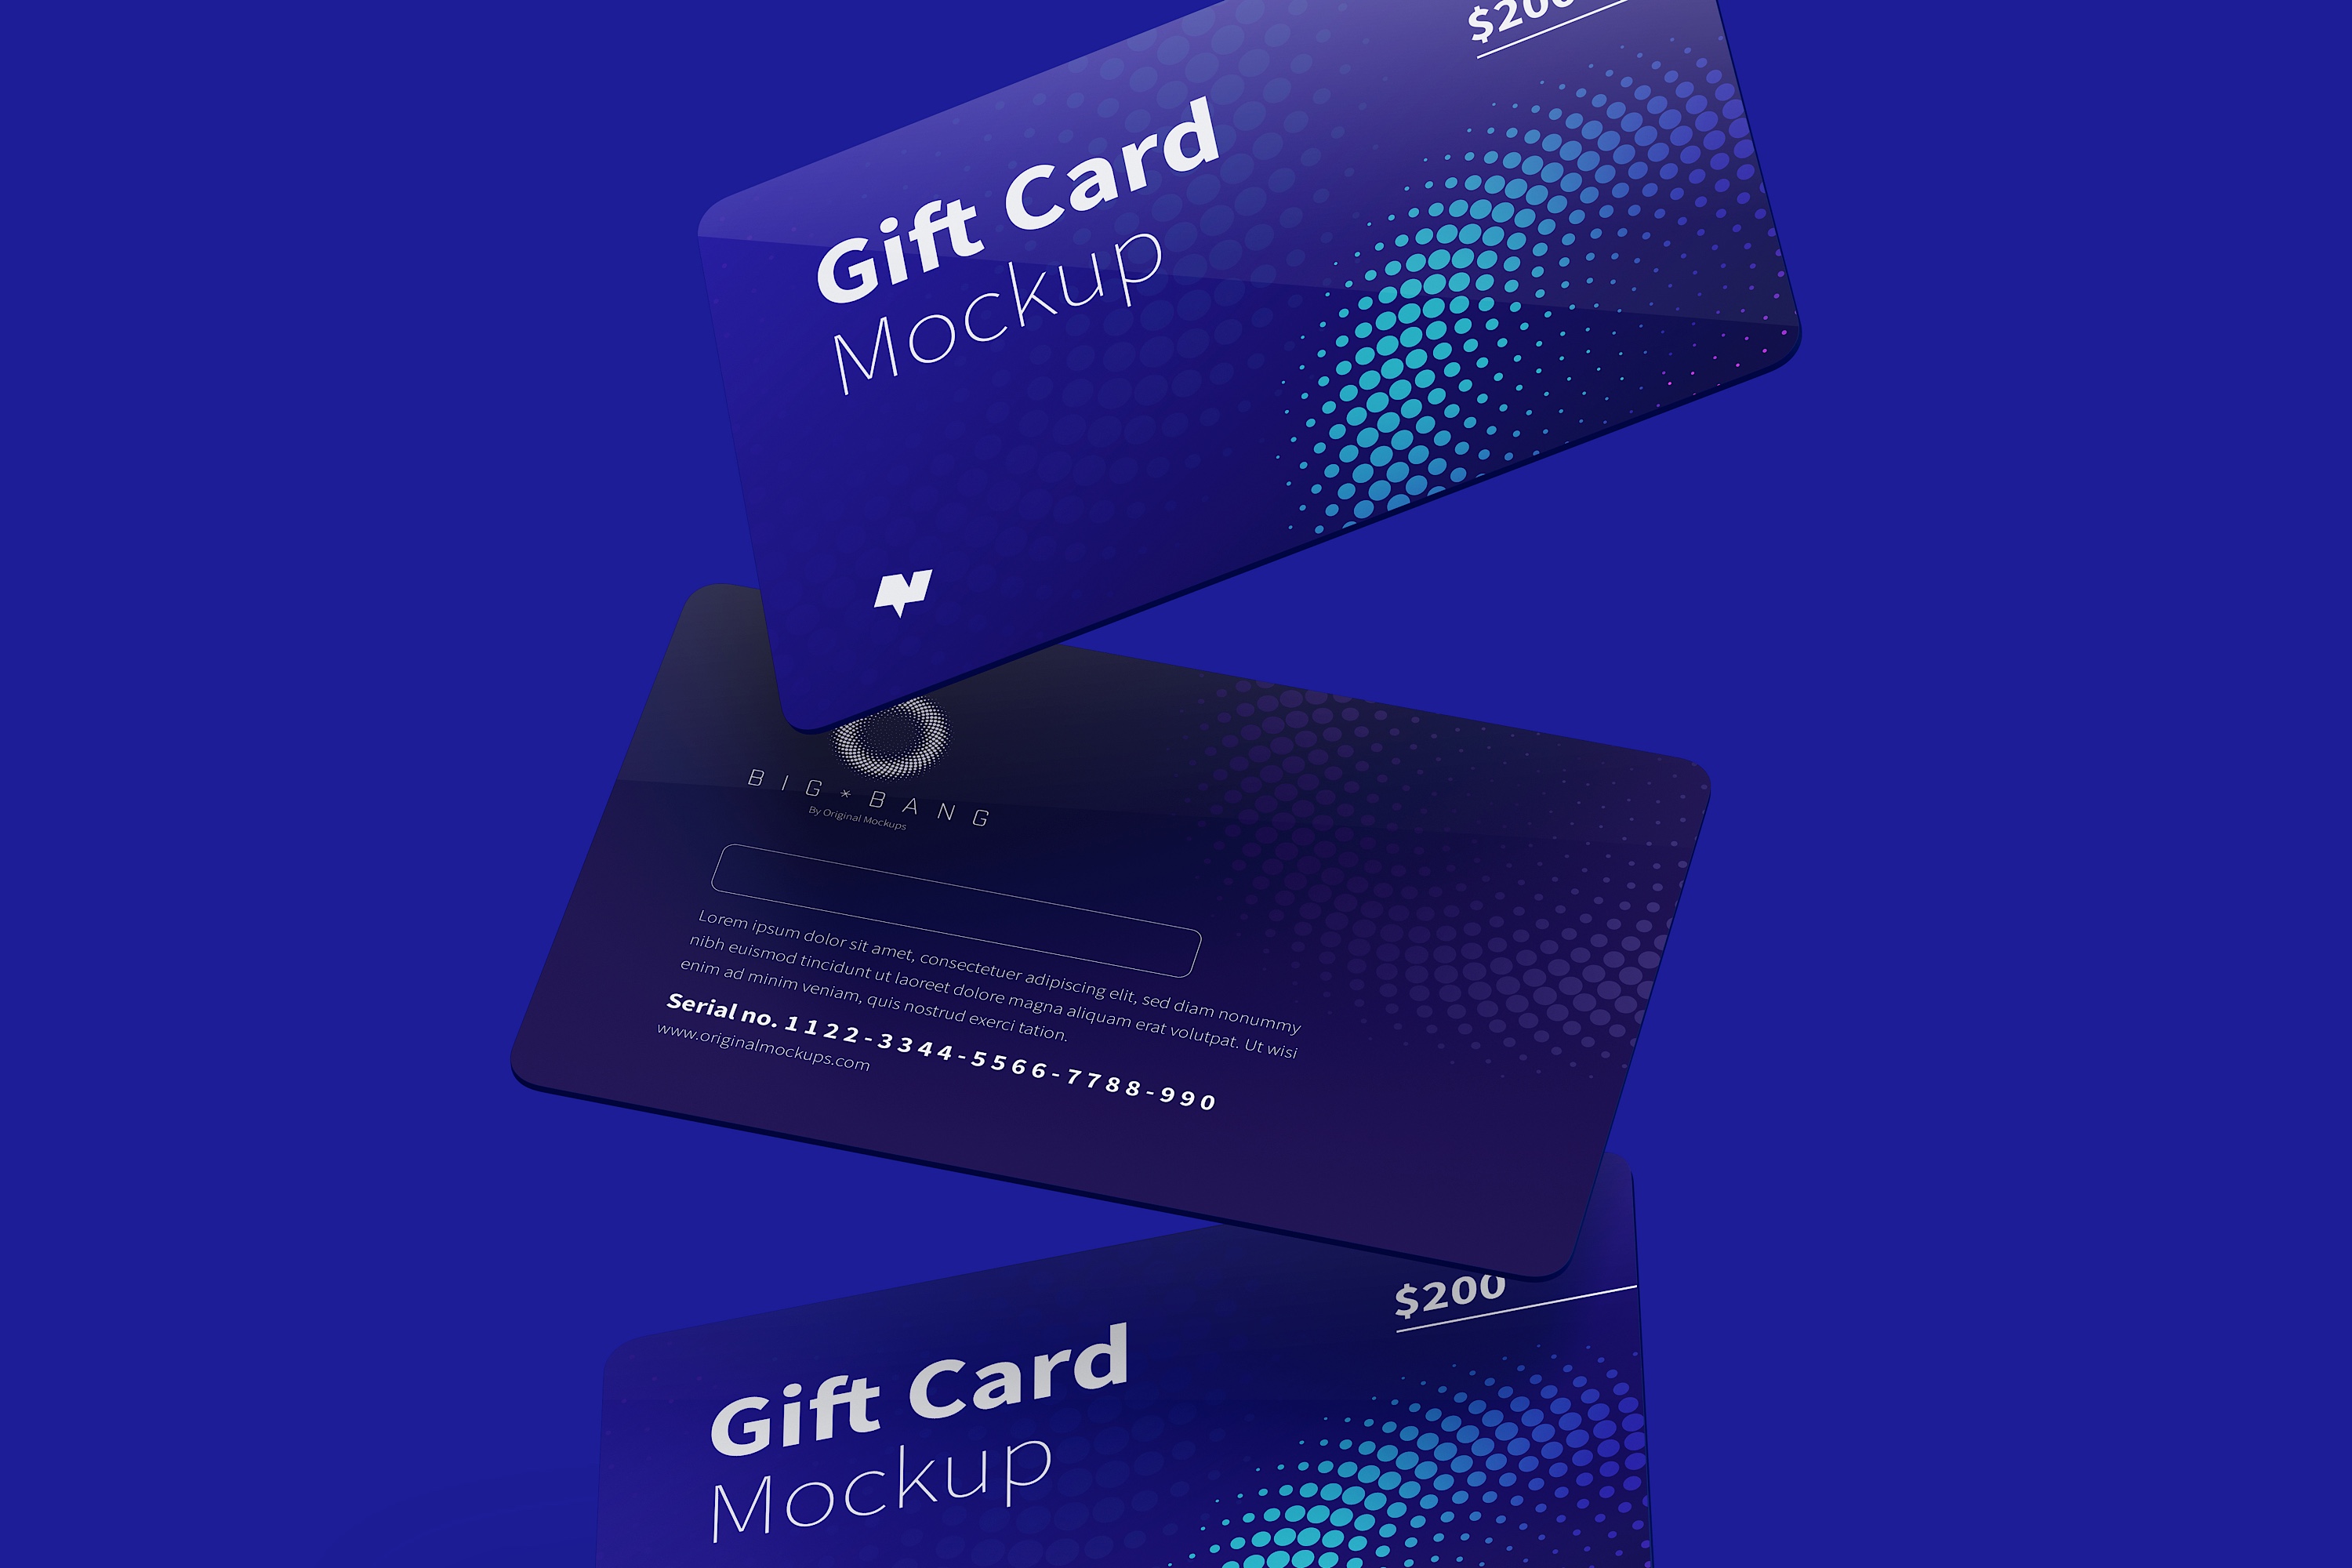 礼品卡购物卡版式设计样机模板02 Gift Card Mockup 02插图2